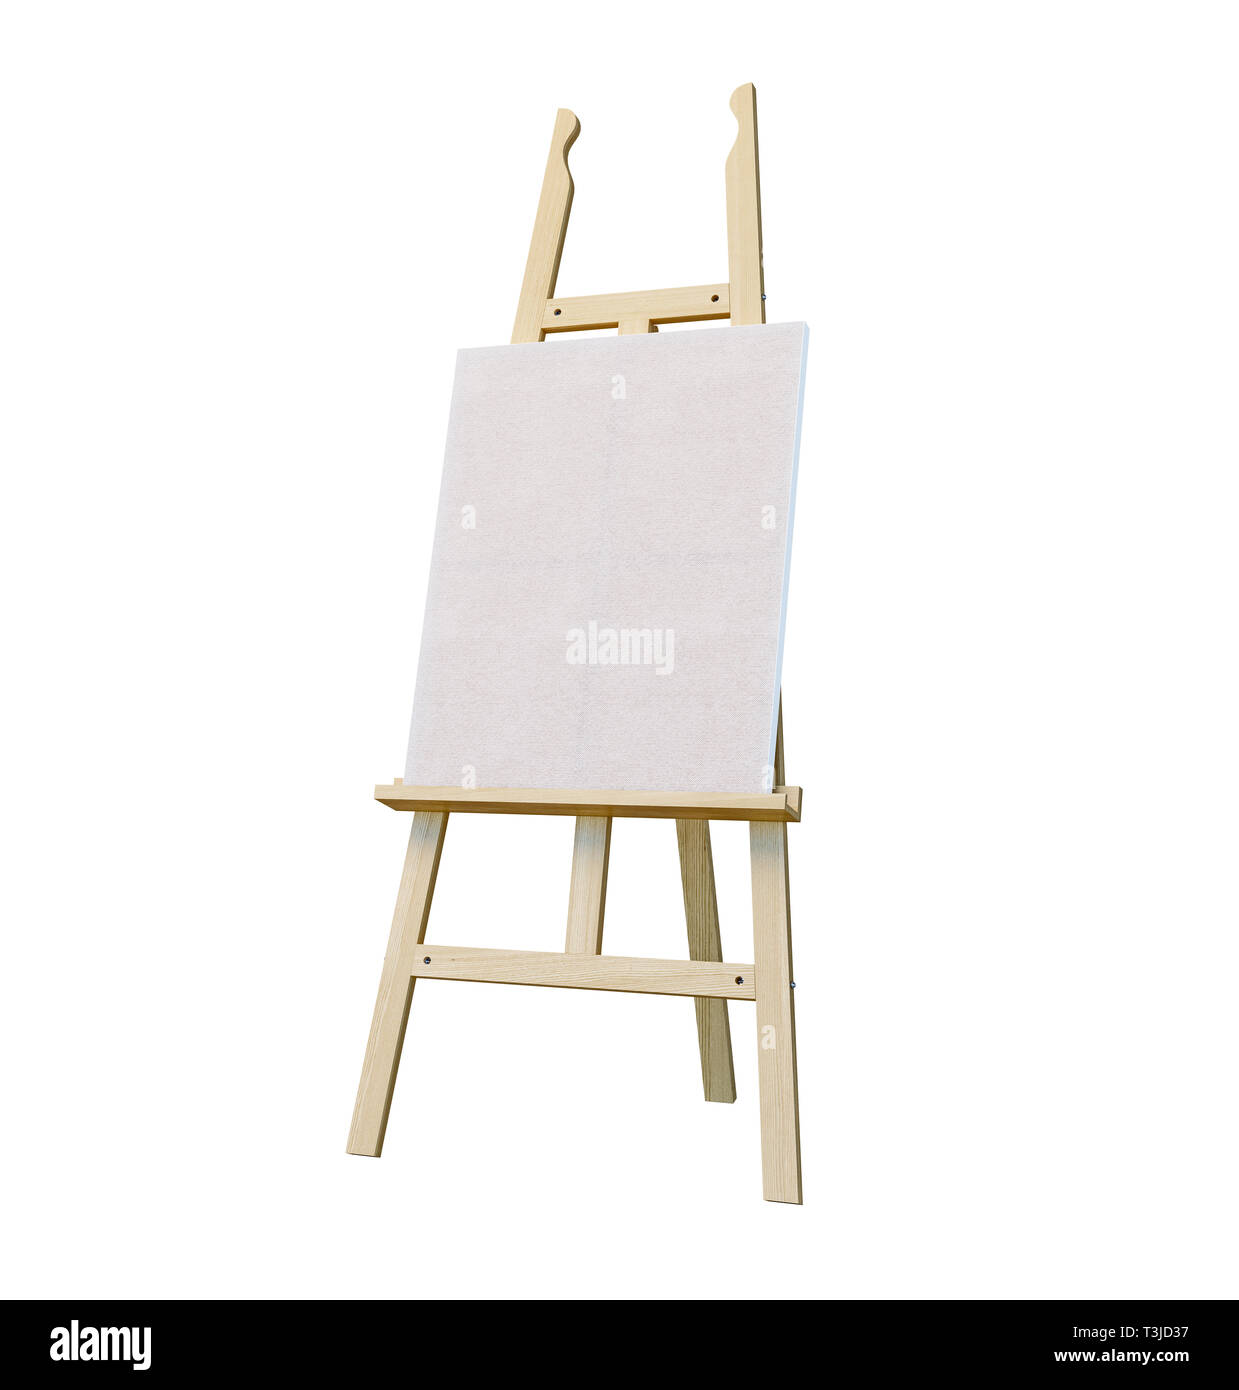 Soporte de pintura de caballete de madera con lienzo en blanco poster letrero aislado sobre fondo blanco, 3D rendering Foto de stock